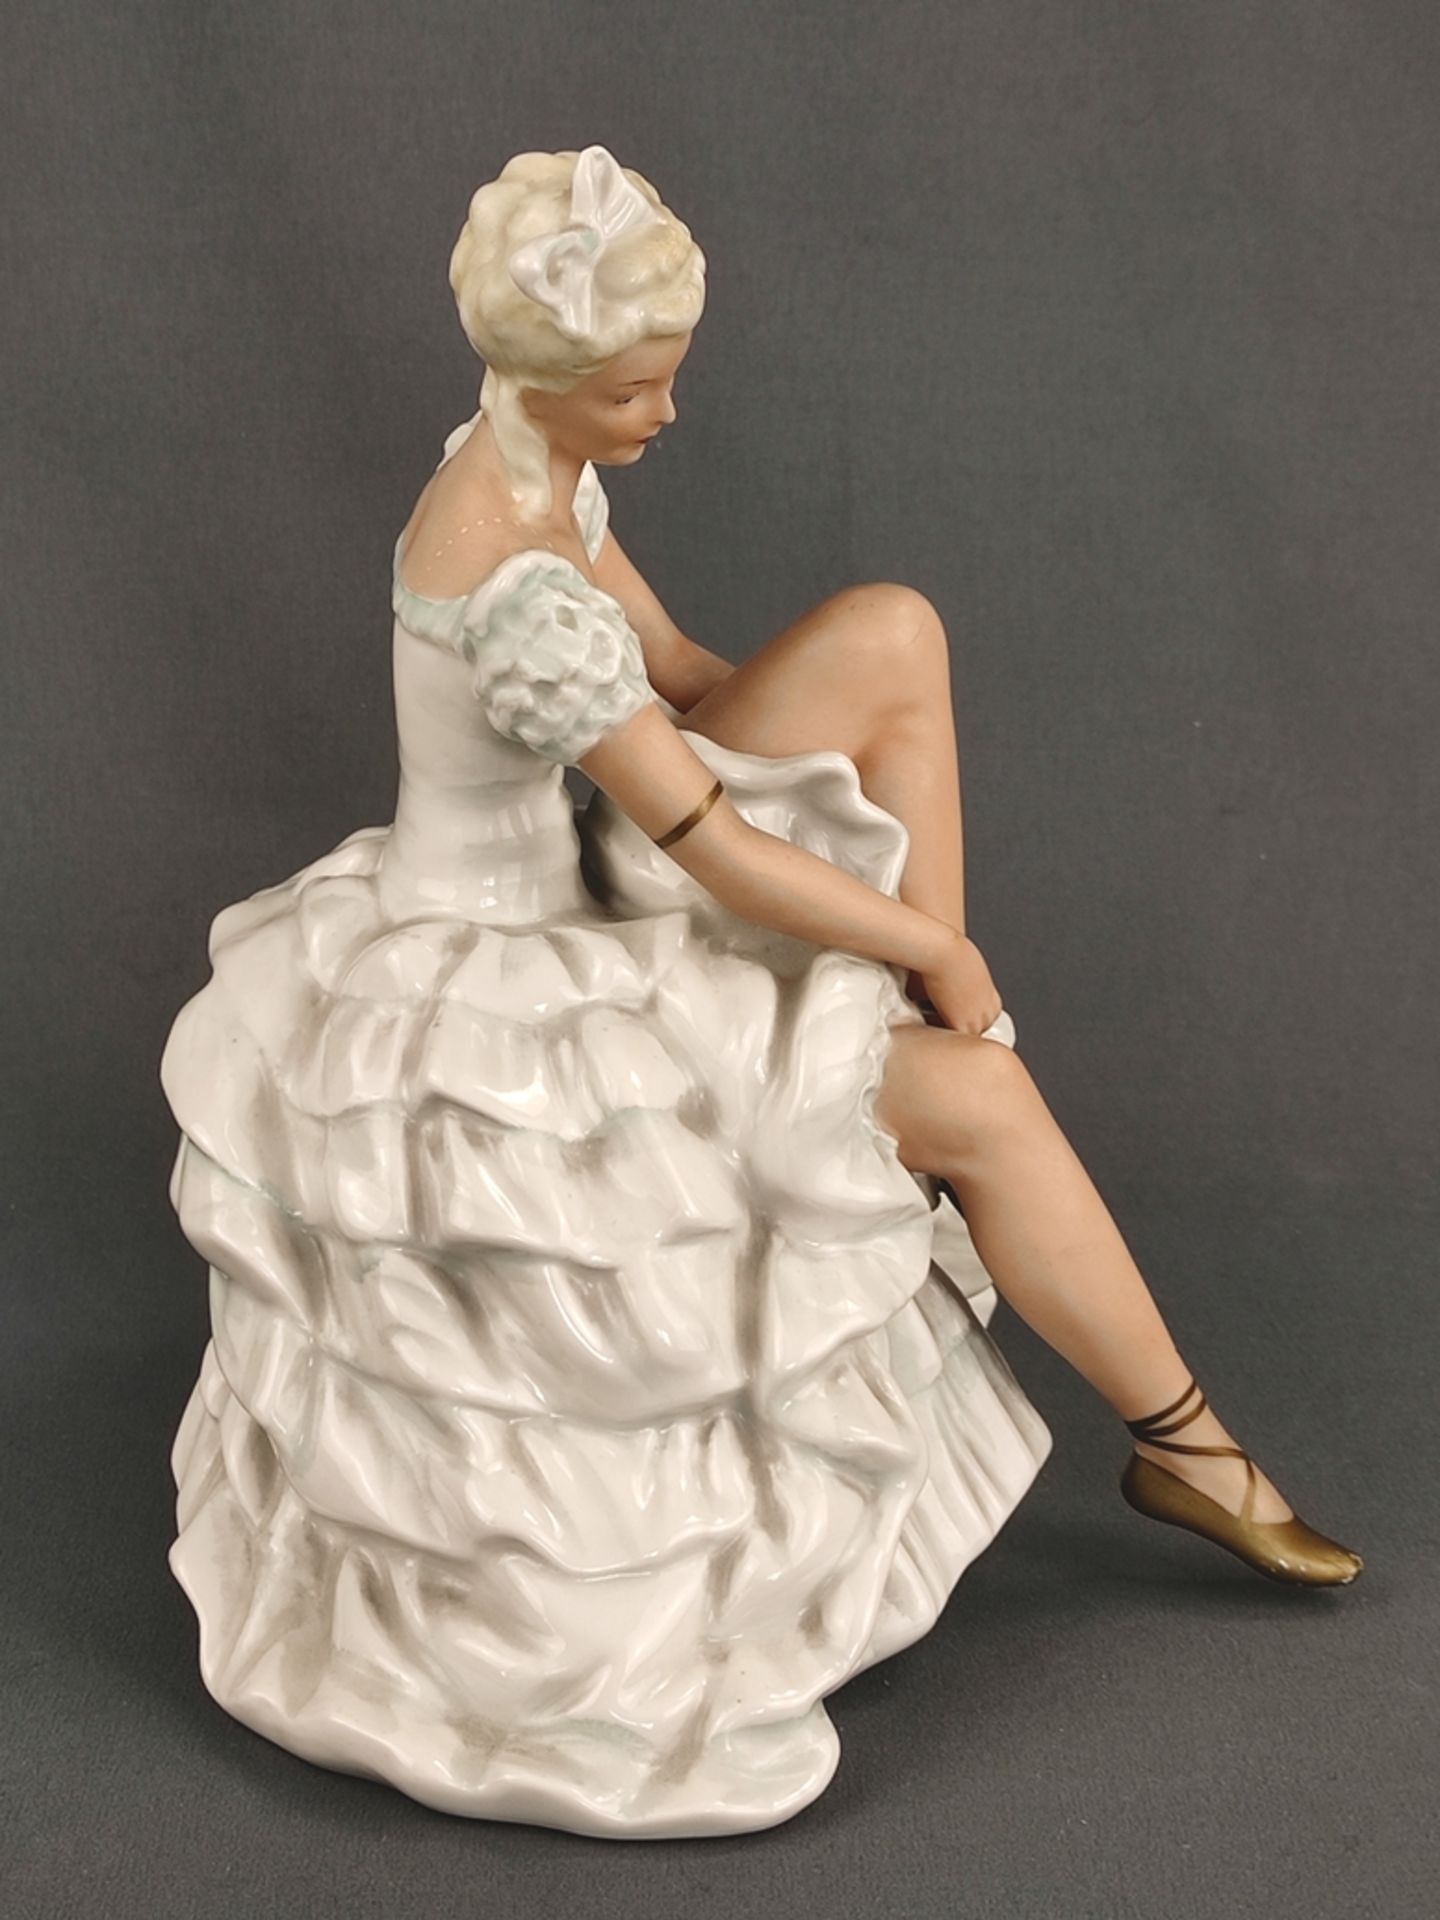 Ballerina, Schaubachkunst, Aufglasurmalerei und partielle Vergoldung, Maße 21x20x17 - Bild 3 aus 7